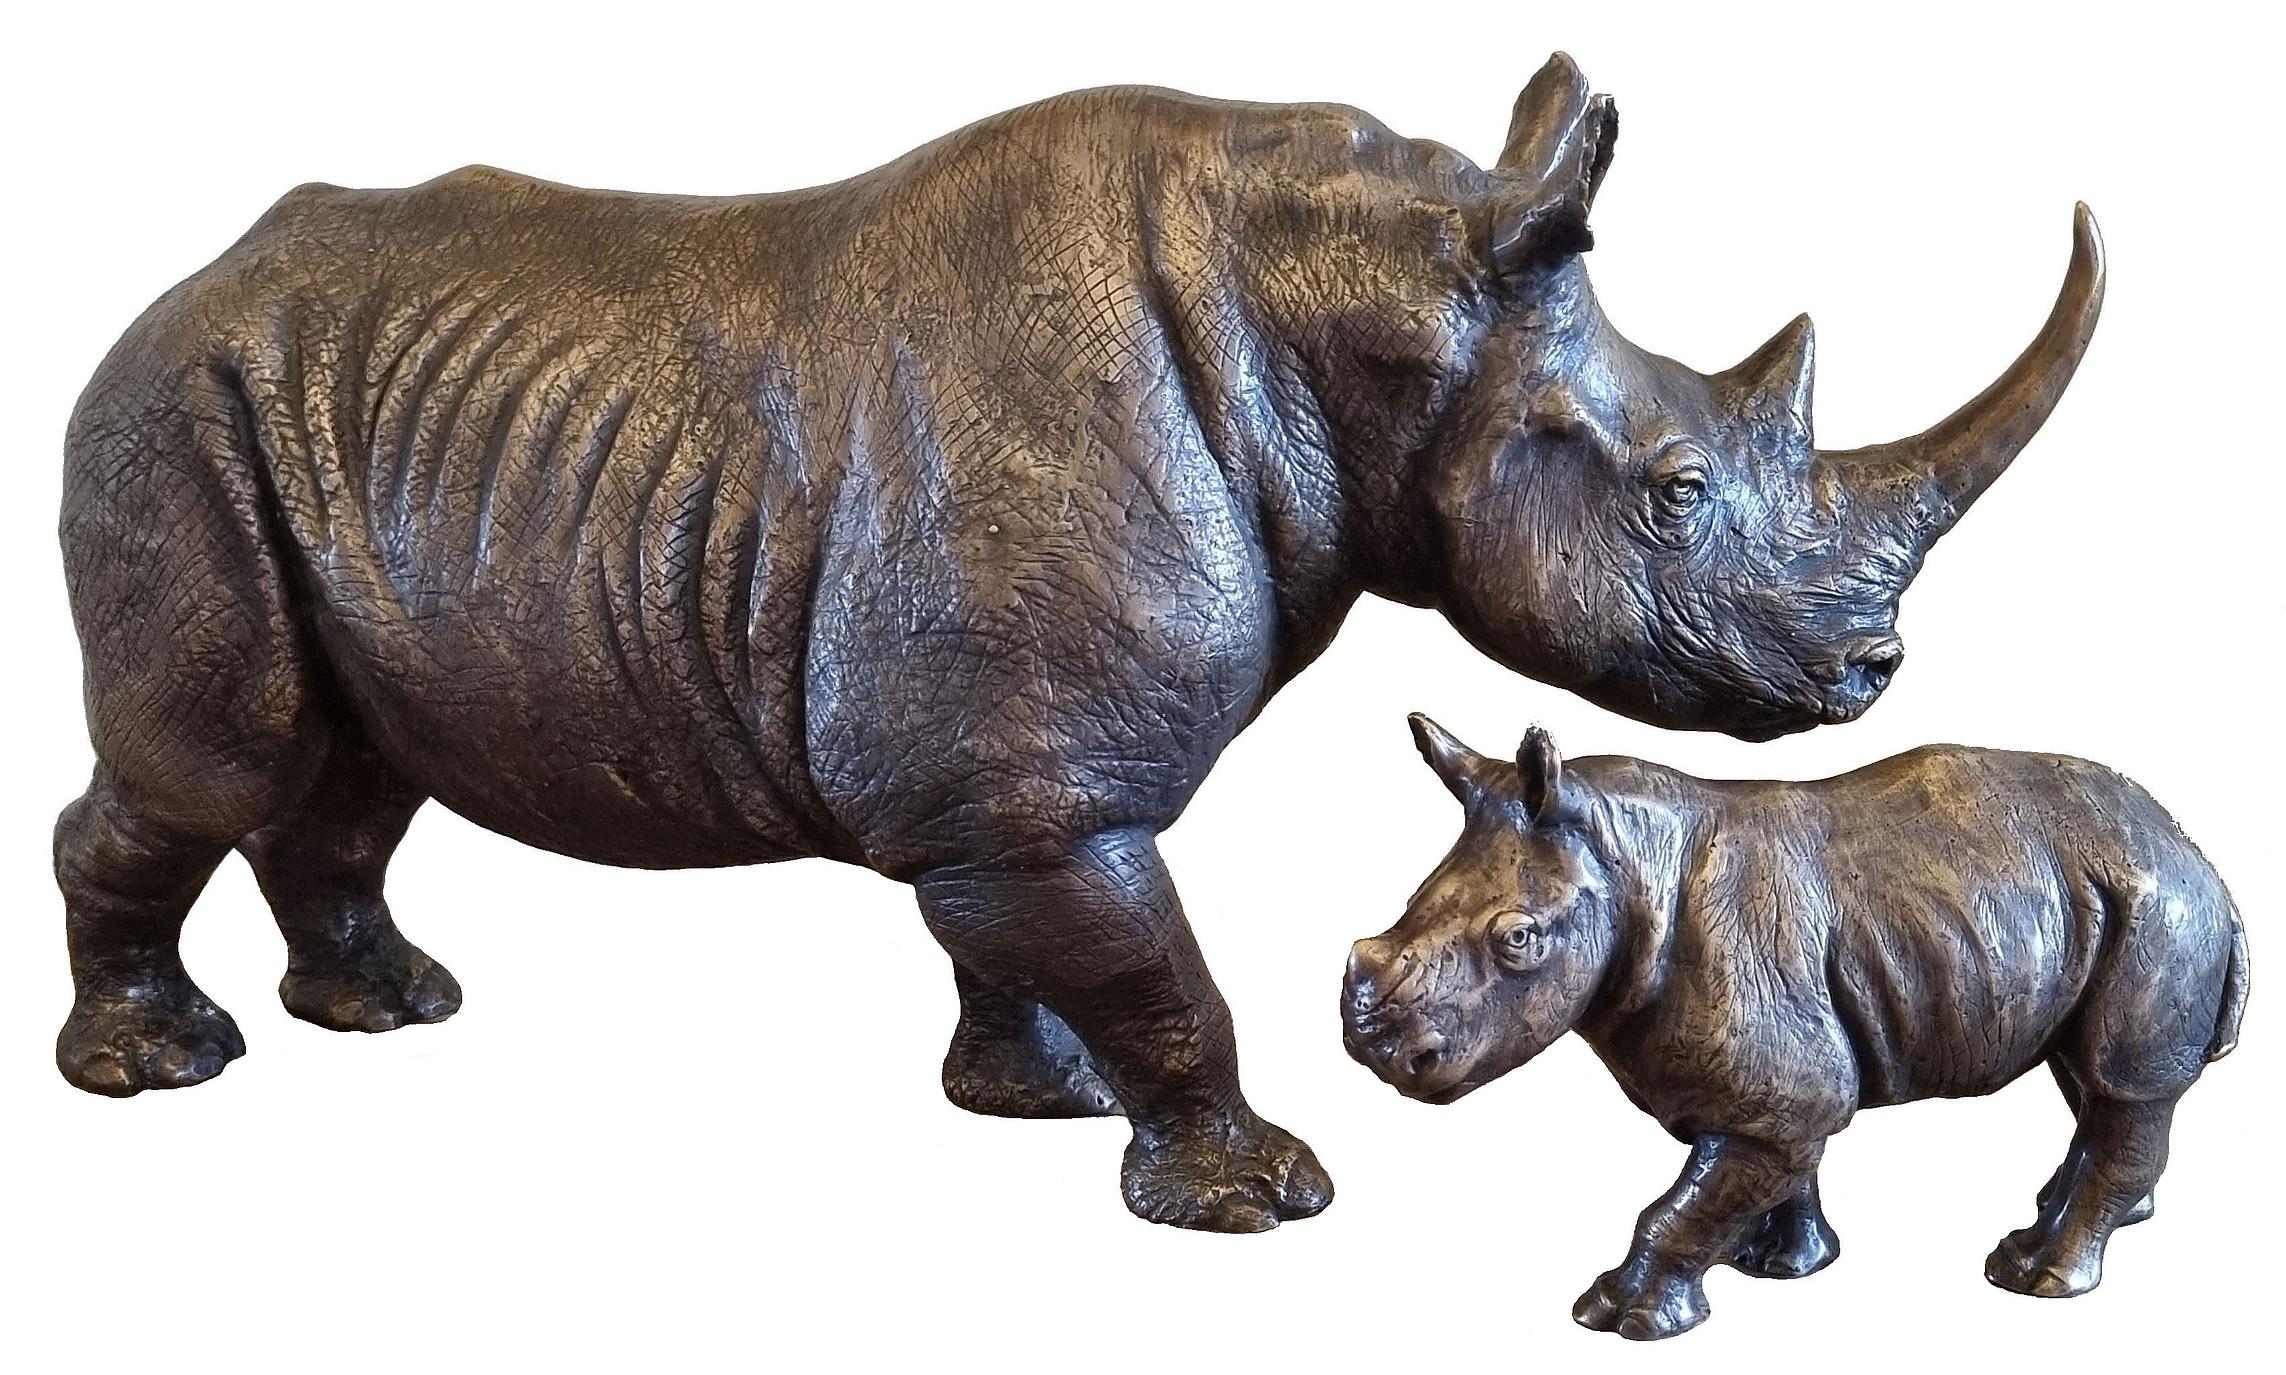 Cette sculpture "Rhino & Baby" a été dédiée à la naissance de Blizzy, le premier rhinocéros de l'histoire né de parents rhinocéros orphelins. La mère Wyntir et le père Storm sont devenus orphelins lorsque des braconniers ont tué leurs mères